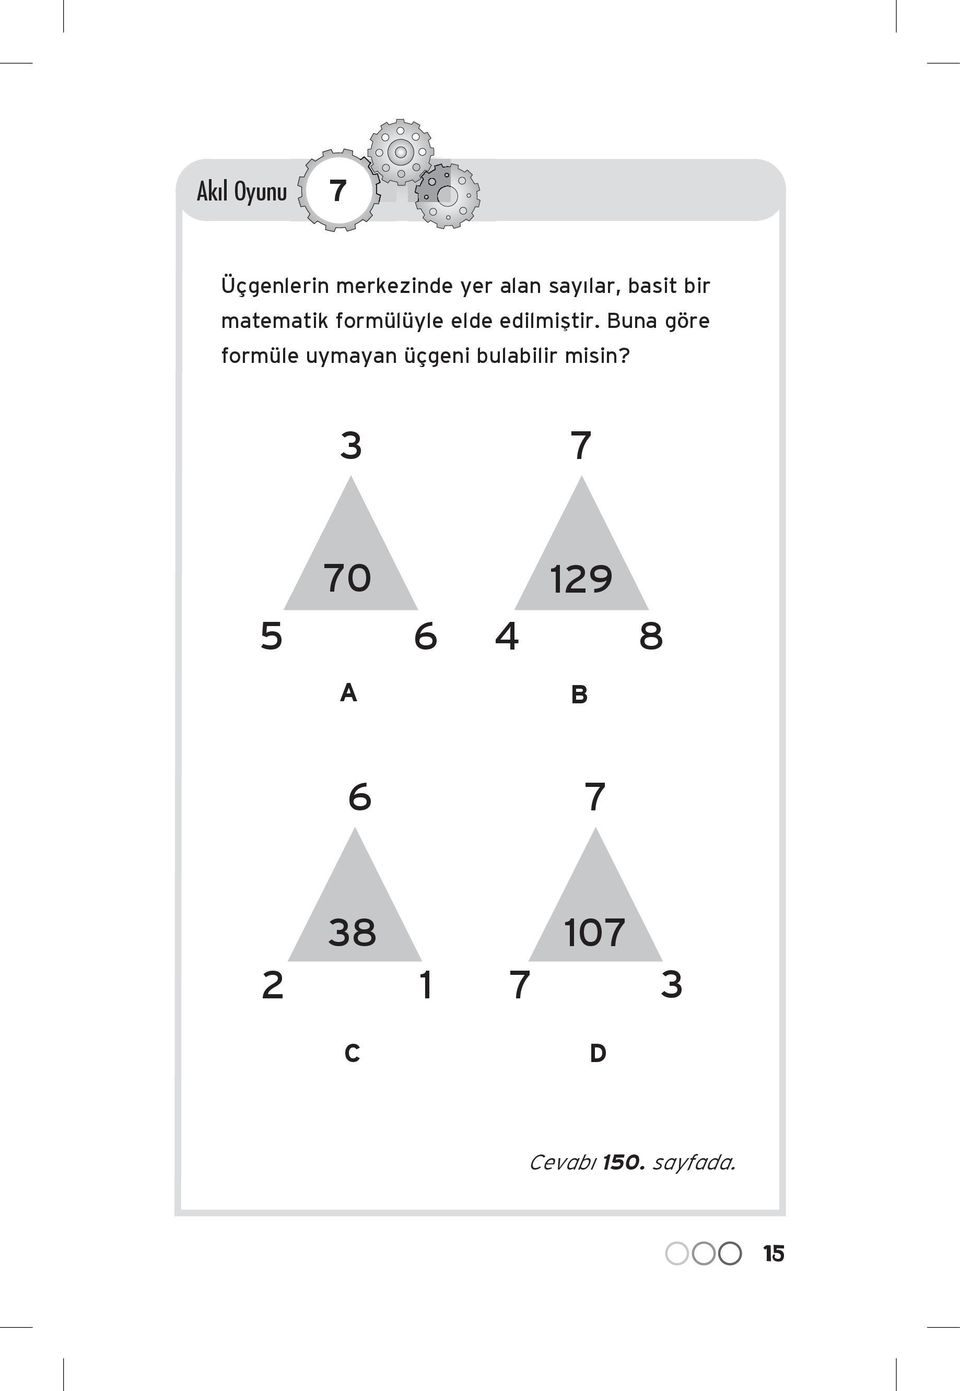 Buna göre formüle uymayan üçgeni bulabilir misin?